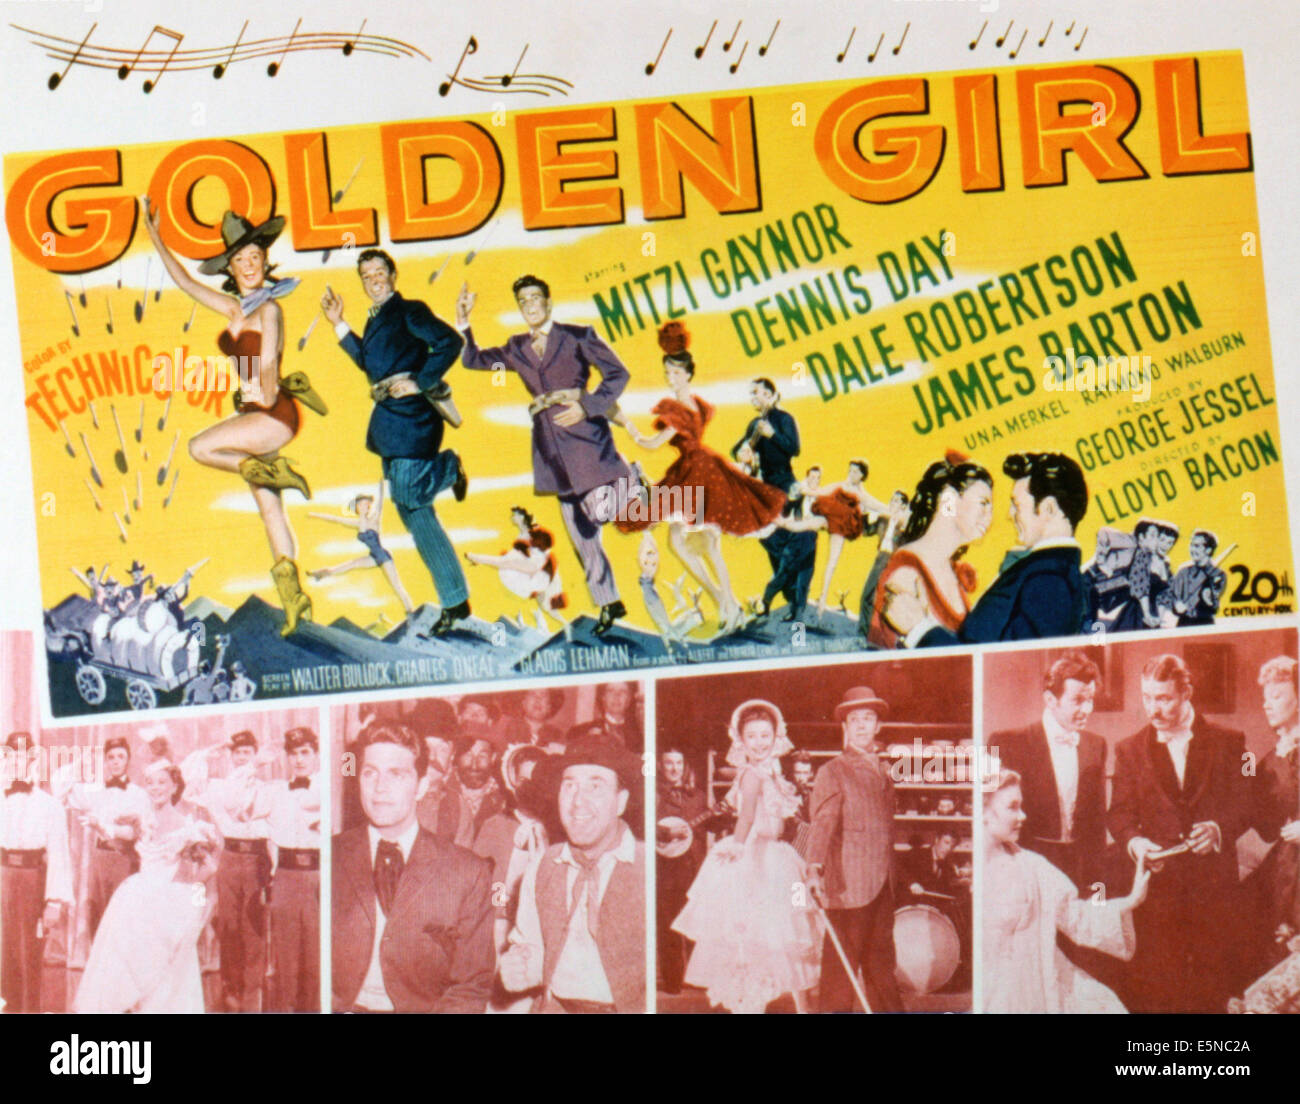 GOLDMARIE, Mitzi Gaynor, Dennis Day, Dale Robertson, 1951, TM und Copyright © 20. Century Fox Film Corp. Alle Rechte vorbehalten Stockfoto